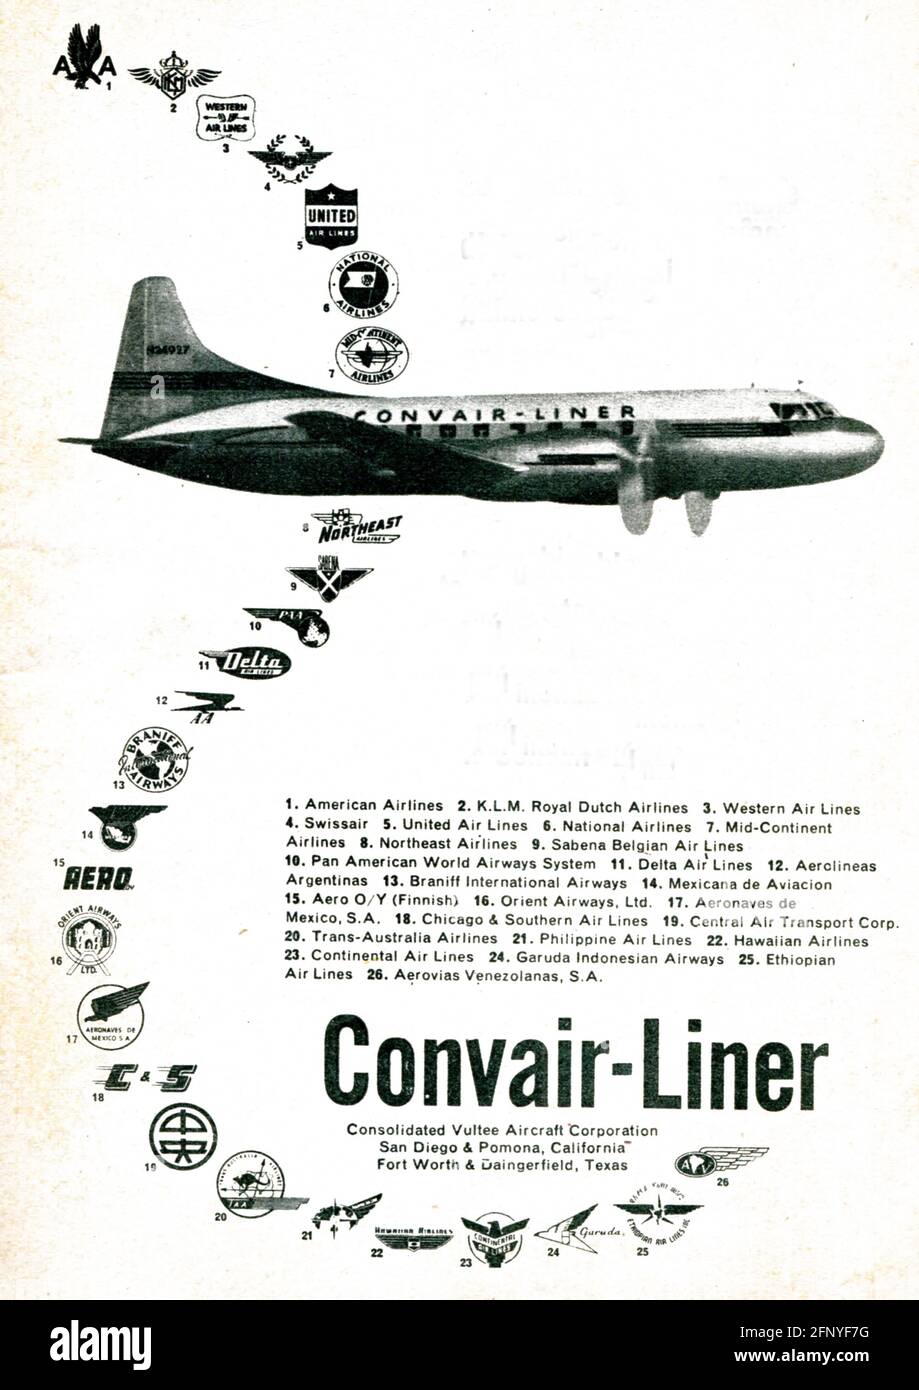 Convair Liner. Vintage alte Printwerbung von Reader's Digest, italienische Ausgabe 1952 Stockfoto